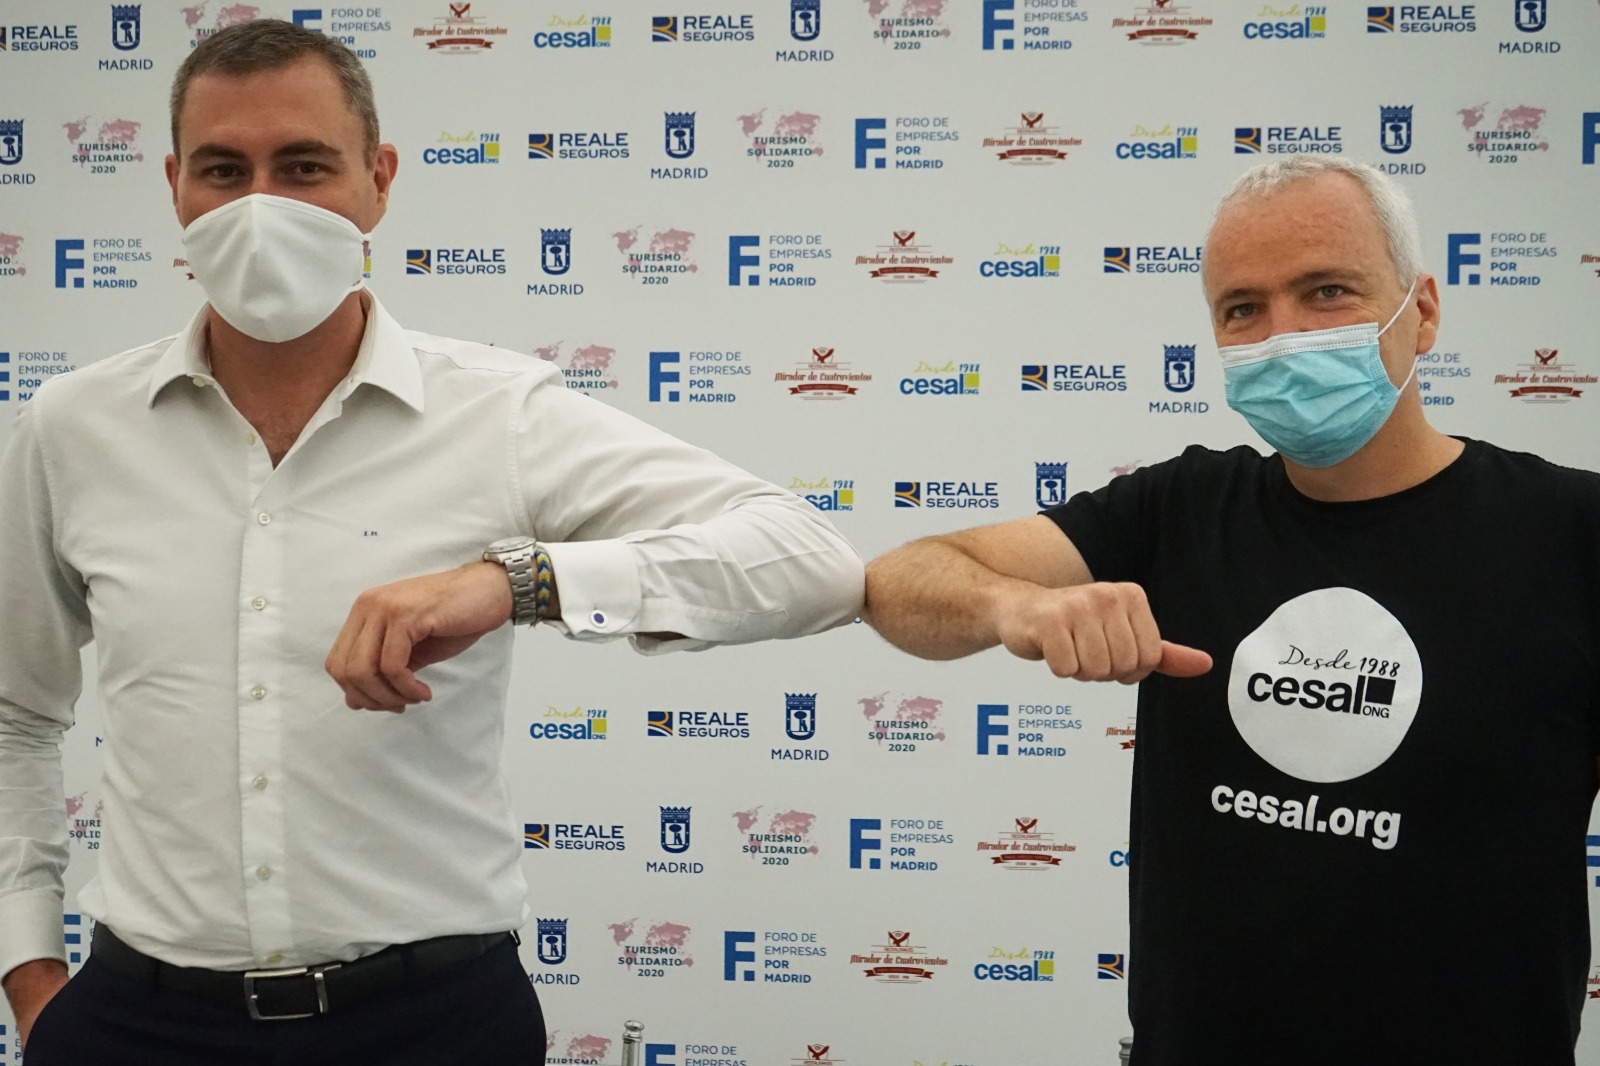 coronavirus empresas solidarias dona cesal es urgente